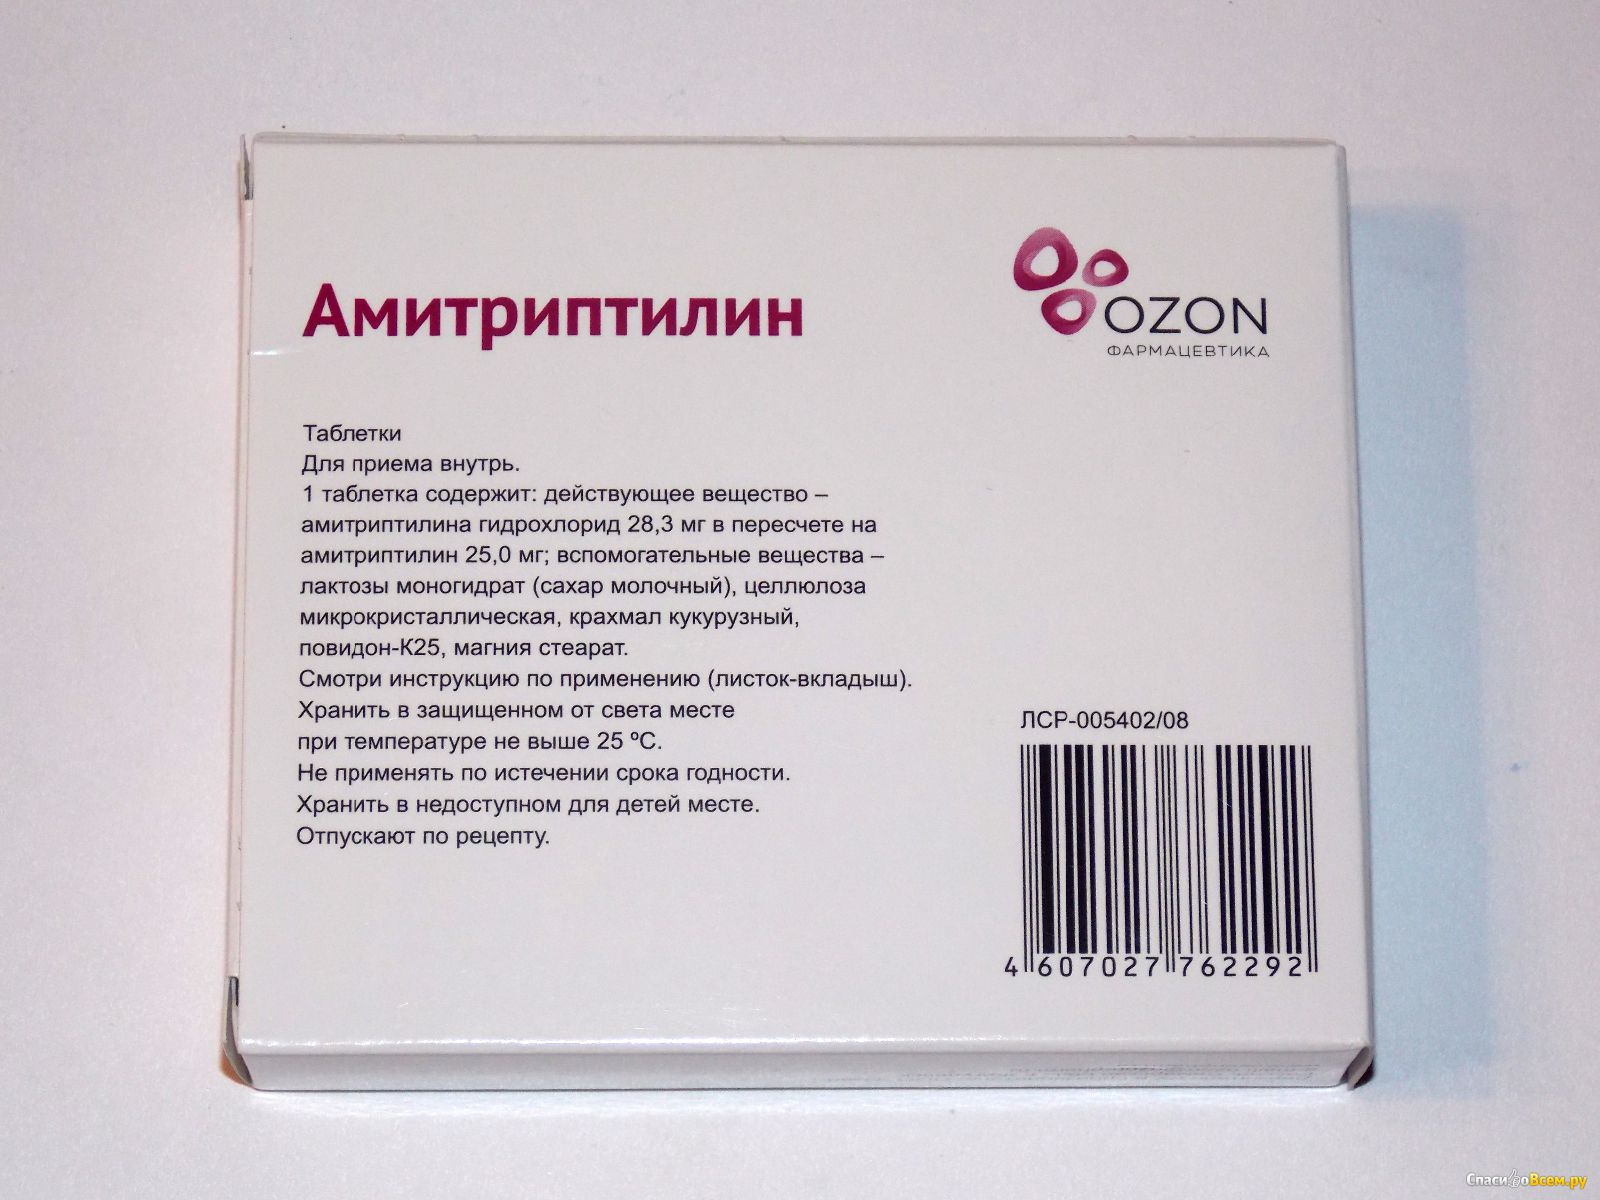 Амитриптилин таблетки отзывы пациентов принимавших